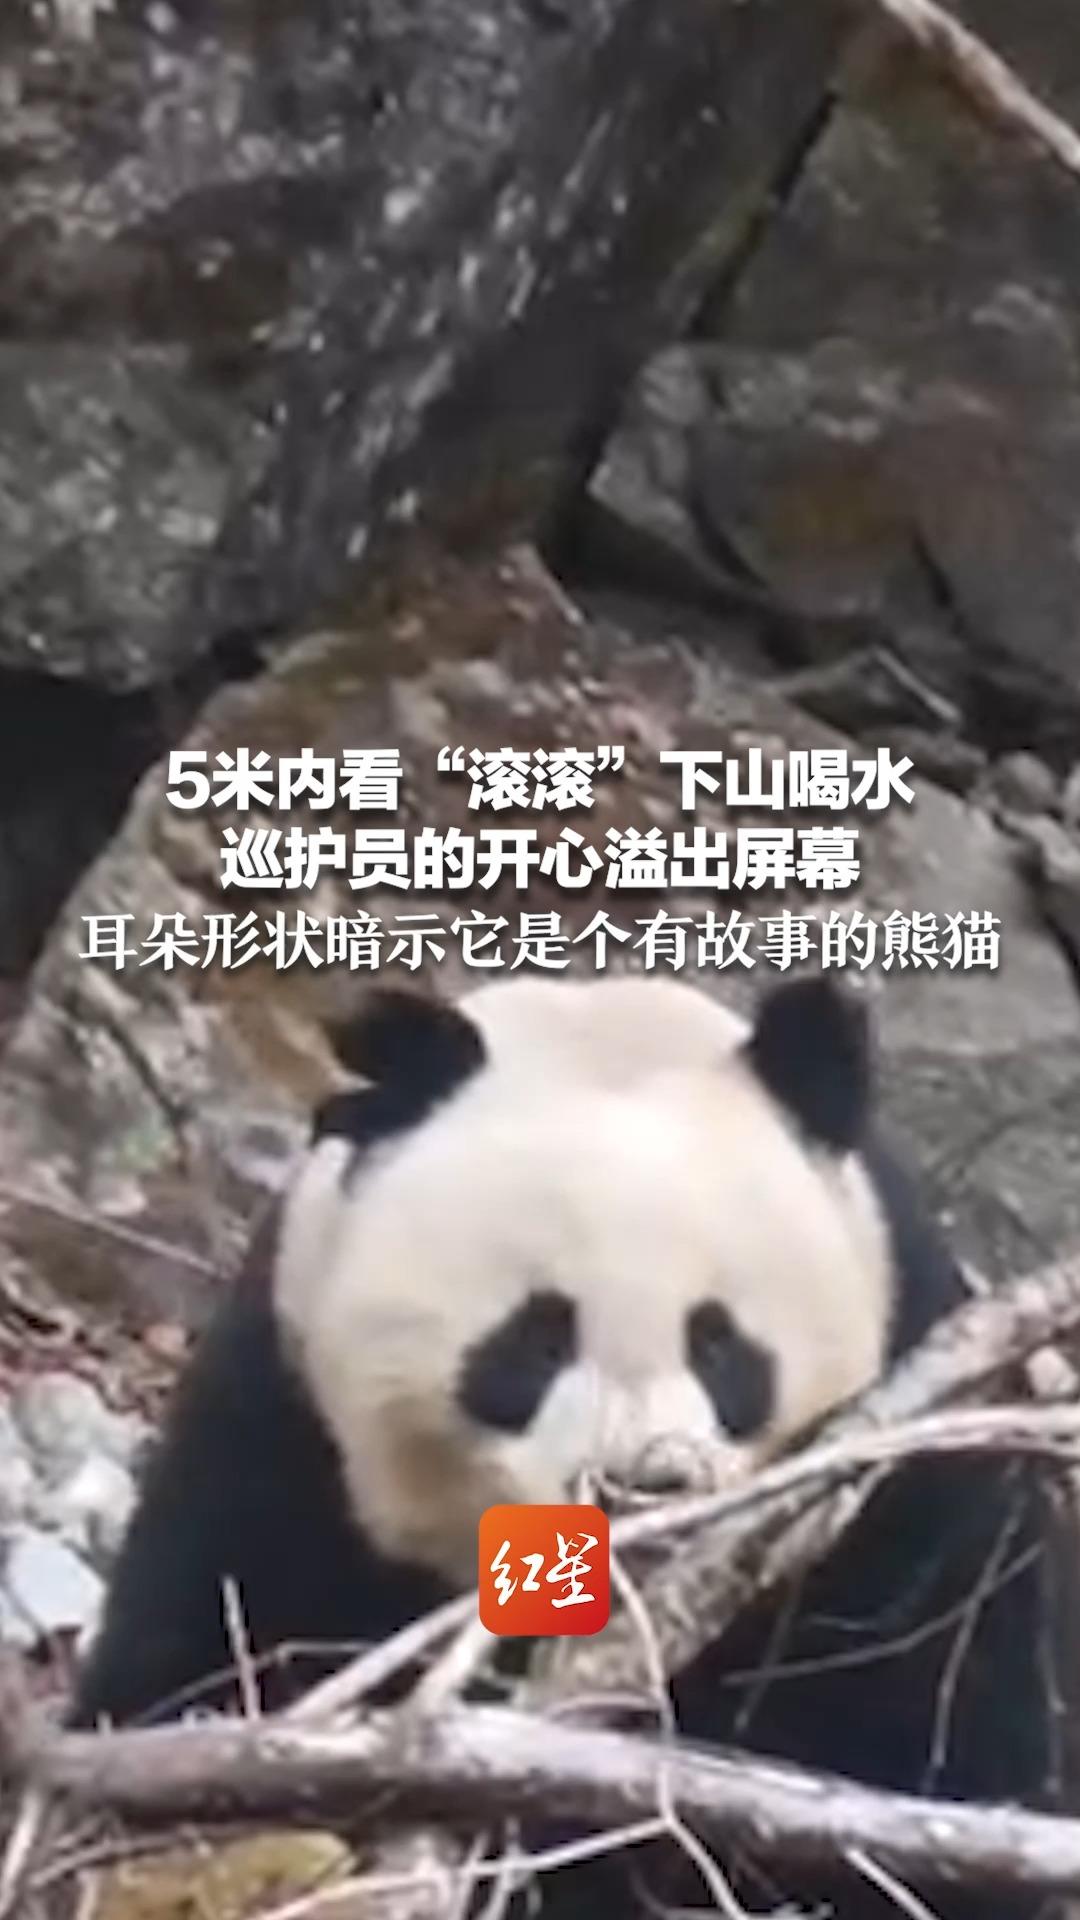 5米内看“滚滚”下山喝水 巡护员的开心溢出屏幕 耳朵形状暗示它是个有故事的熊猫